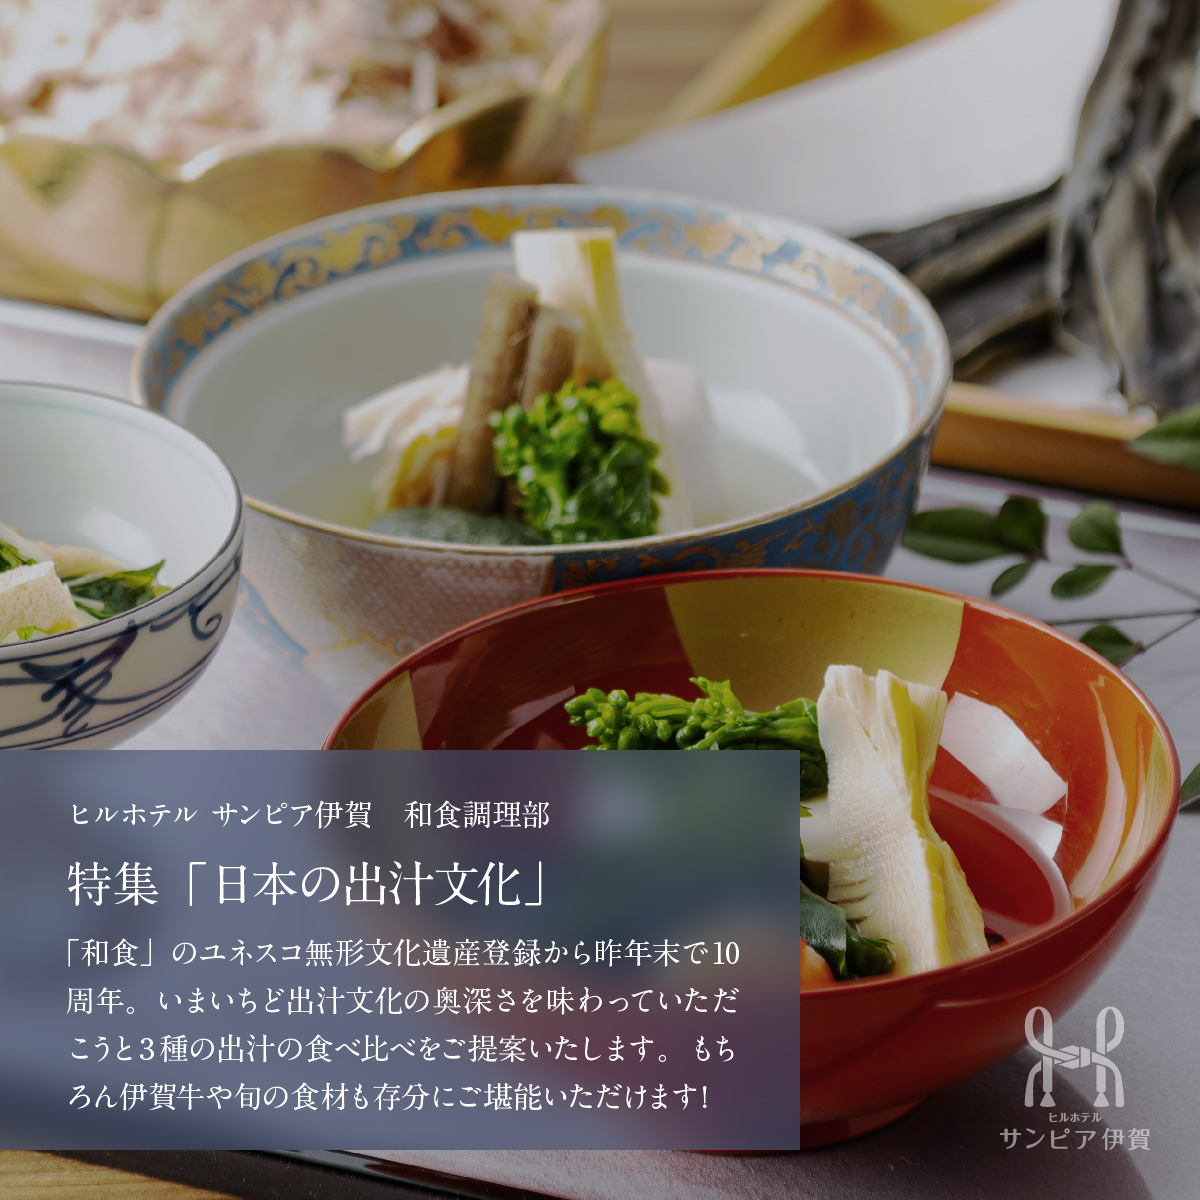 お料理の紹介。特集「日本の出汁文化」。「和食」のユネスコ無形文化遺産登録から昨年末で10周年。いまいちど出汁文化の奥深さを味わっていただこうと3種の出汁の食べ比べをご提案いたします。もちろん伊賀牛や旬の食材も存分にご堪能いただけます！